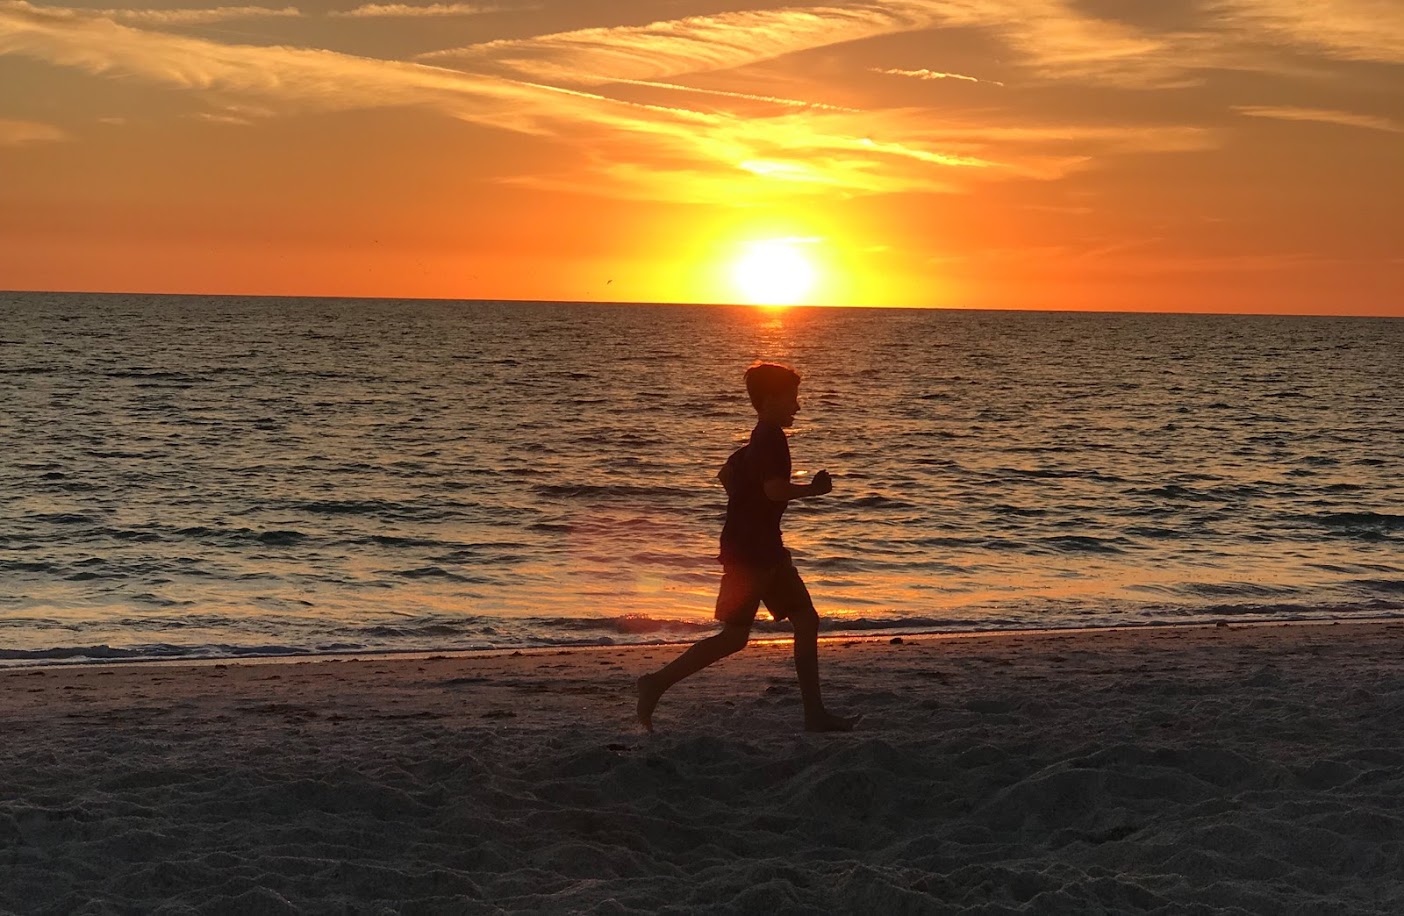 a boy running on a beach at sunset